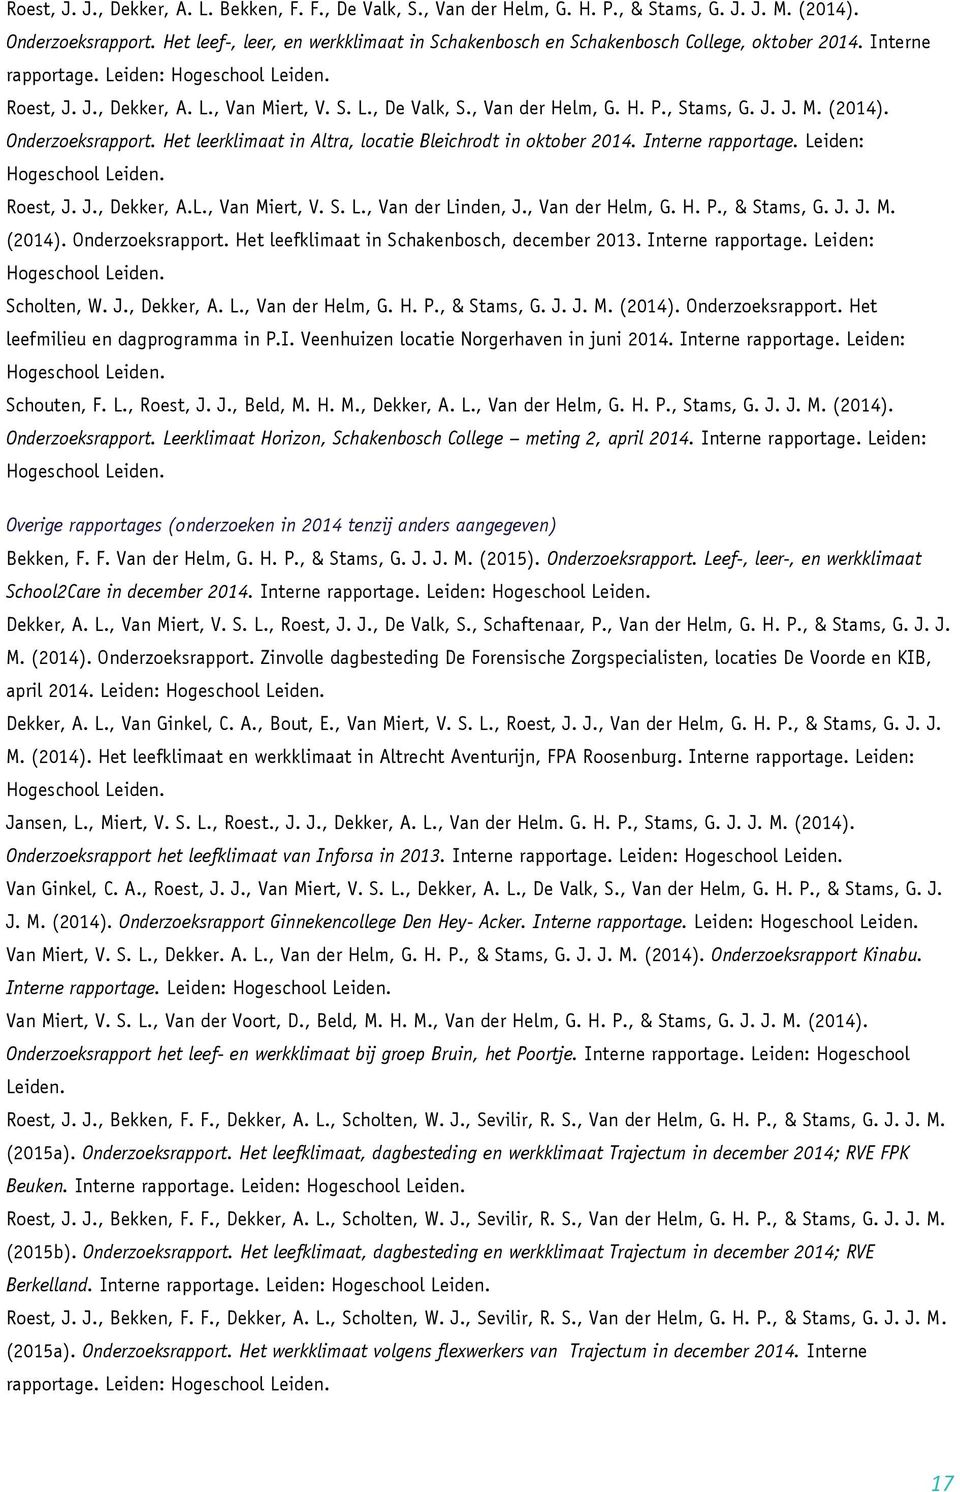 , Stams, G. J. J. M. (2014). Onderzoeksrapport. Het leerklimaat in Altra, locatie Bleichrodt in oktober 2014. Interne rapportage. Leiden: Roest, J. J., Dekker, A.L., Van Miert, V. S. L., Van der Linden, J.